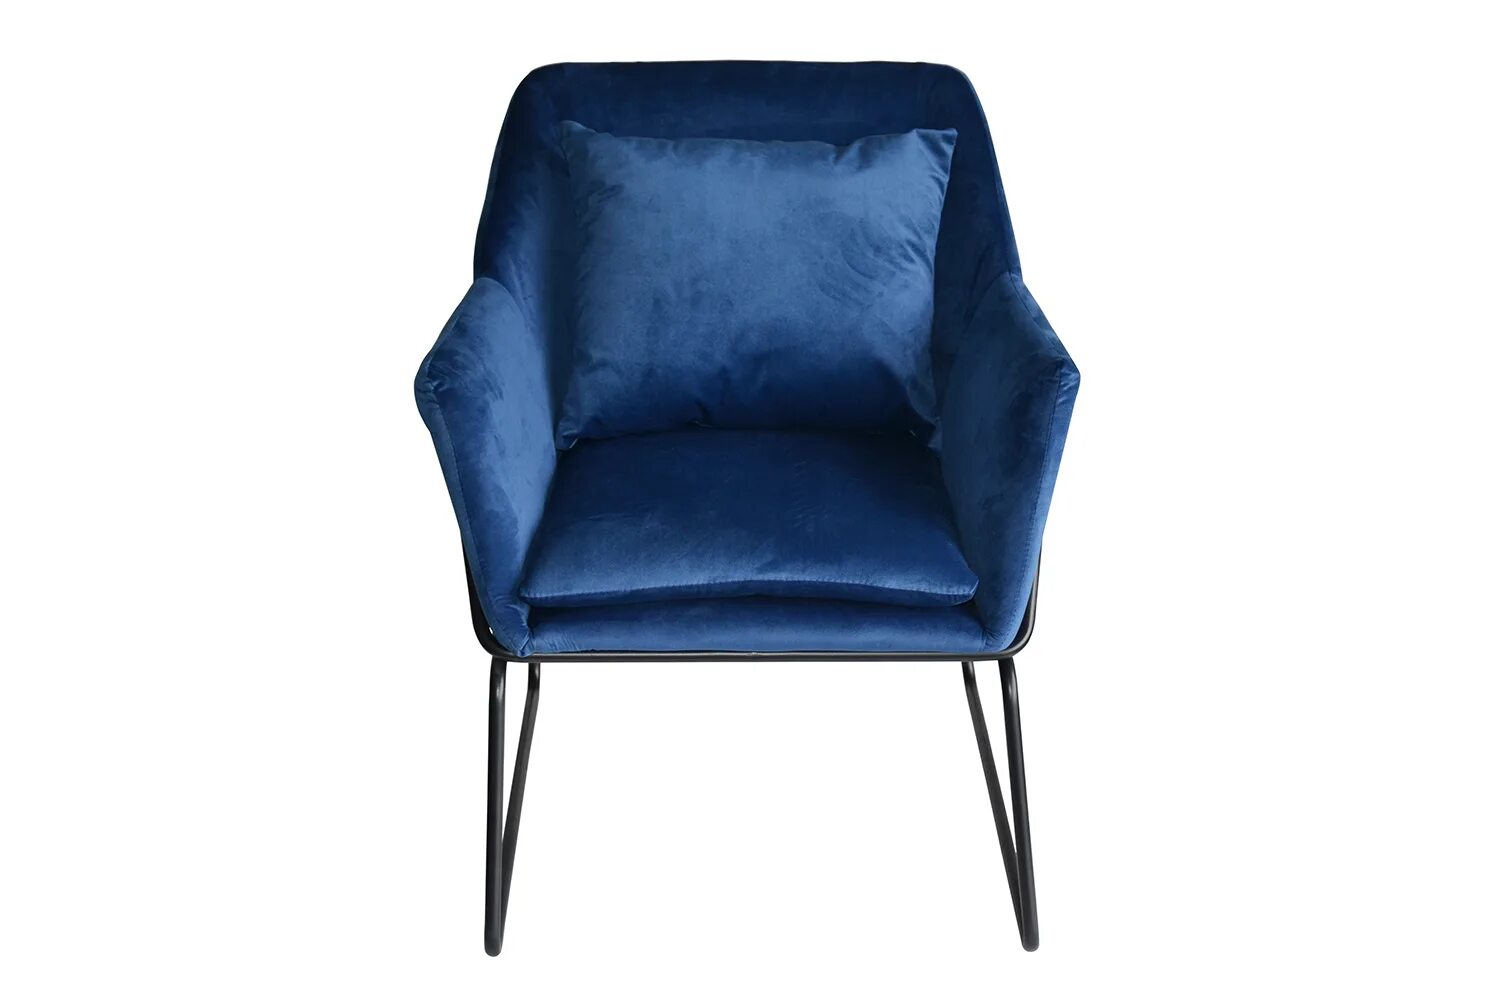 Кресло Arizona синее. Кресло Аризона синий хофф. Кресло Шелфорд синее. Хофф кресло стул.